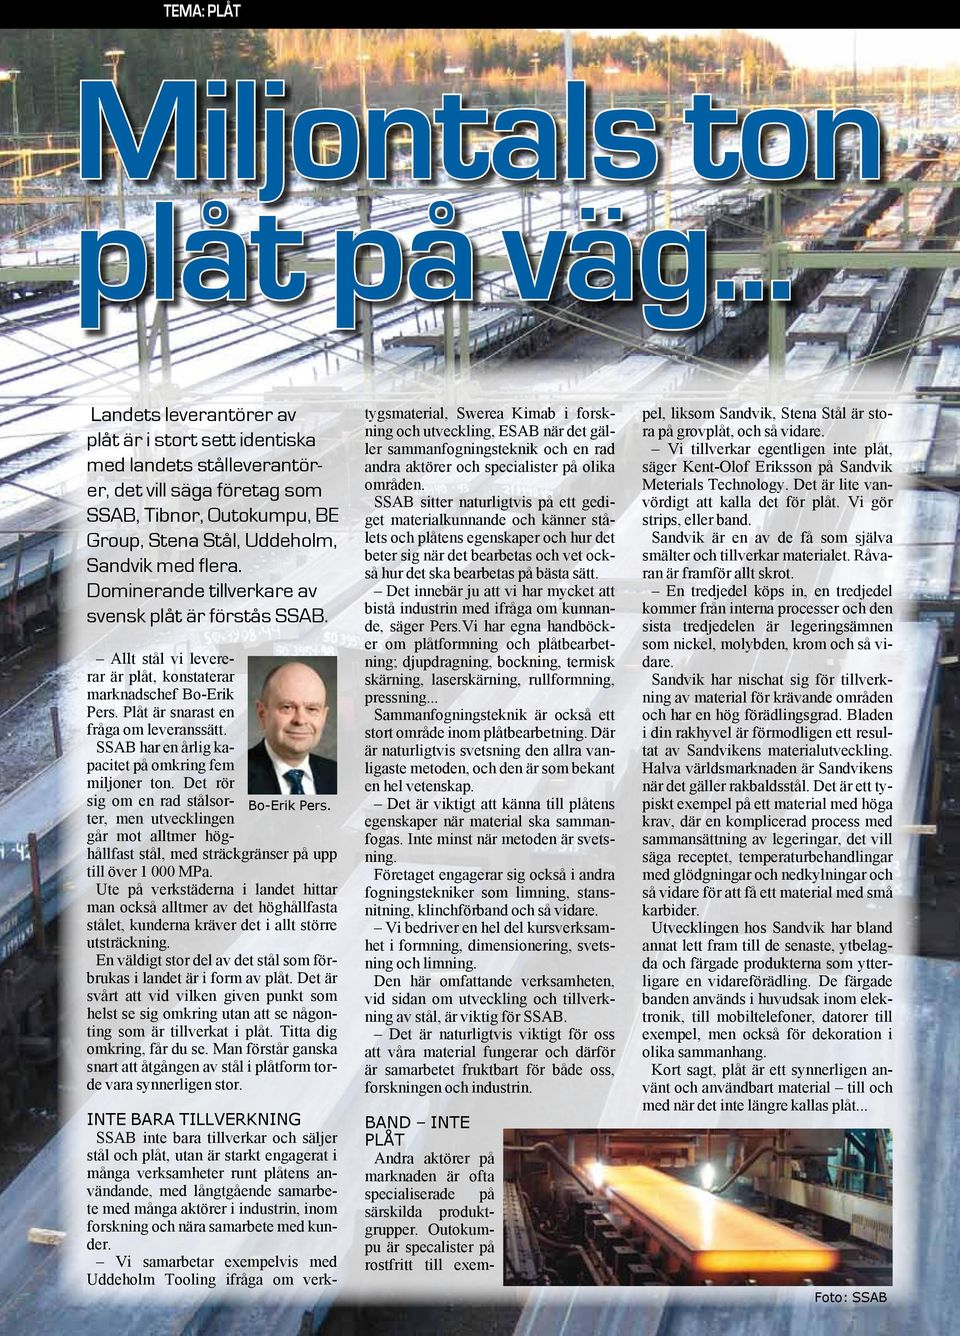 Dominerande tillverkare av svensk plåt är förstås SSAB. Allt stål vi levererar är plåt, konstaterar marknadschef Bo-Erik Pers. Plåt är snarast en fråga om leveranssätt.